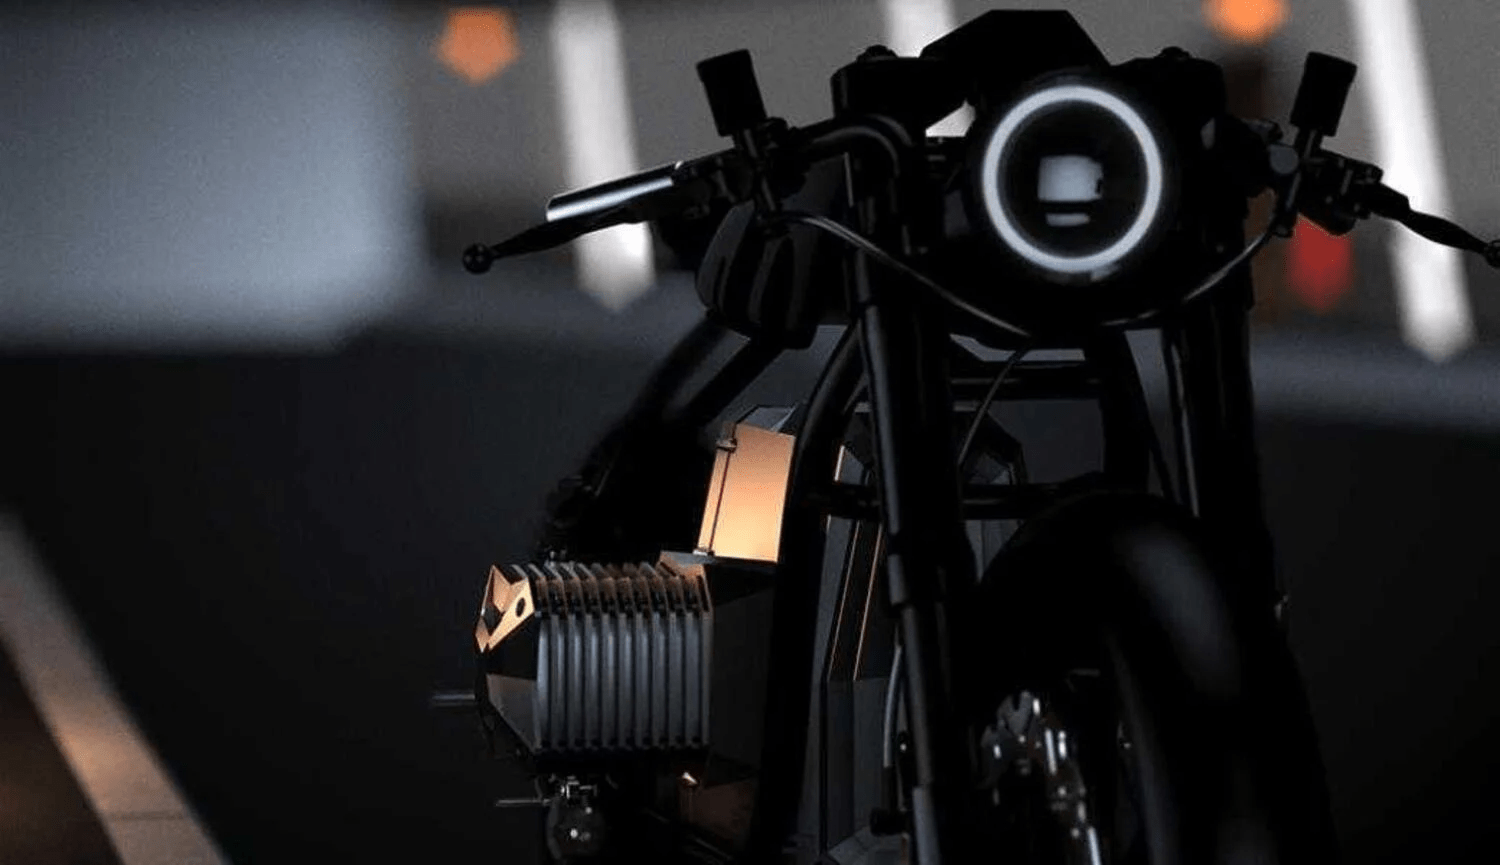 Kit retrofit électrique roue arrière moto